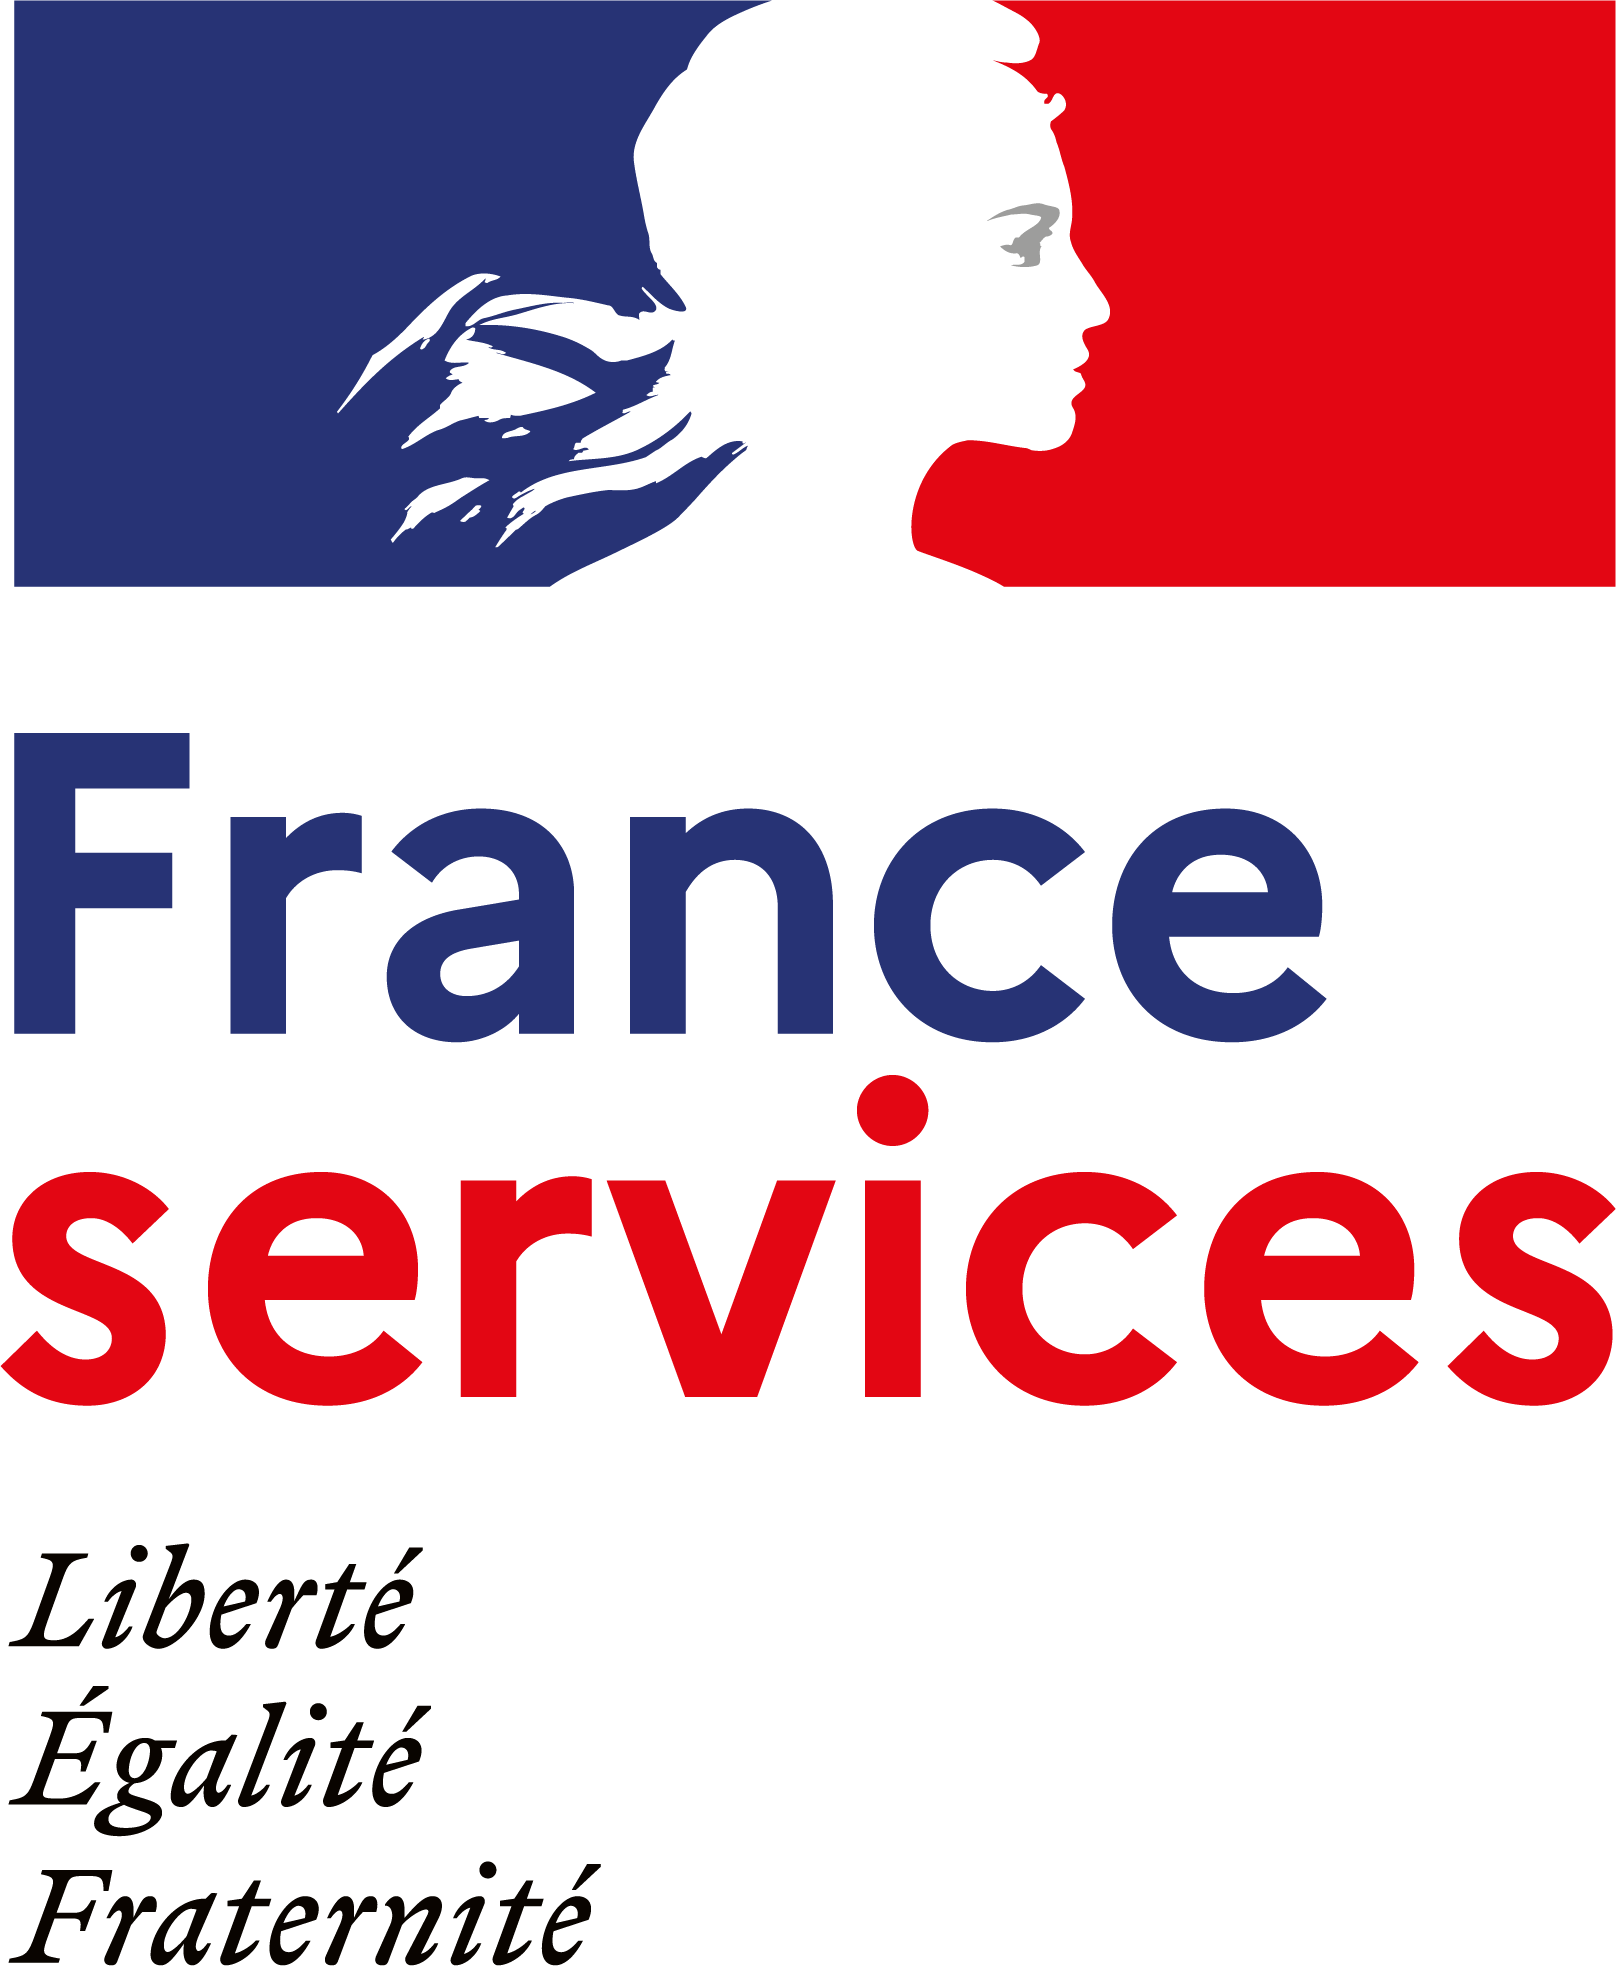 Image de couverture - Maison France Services